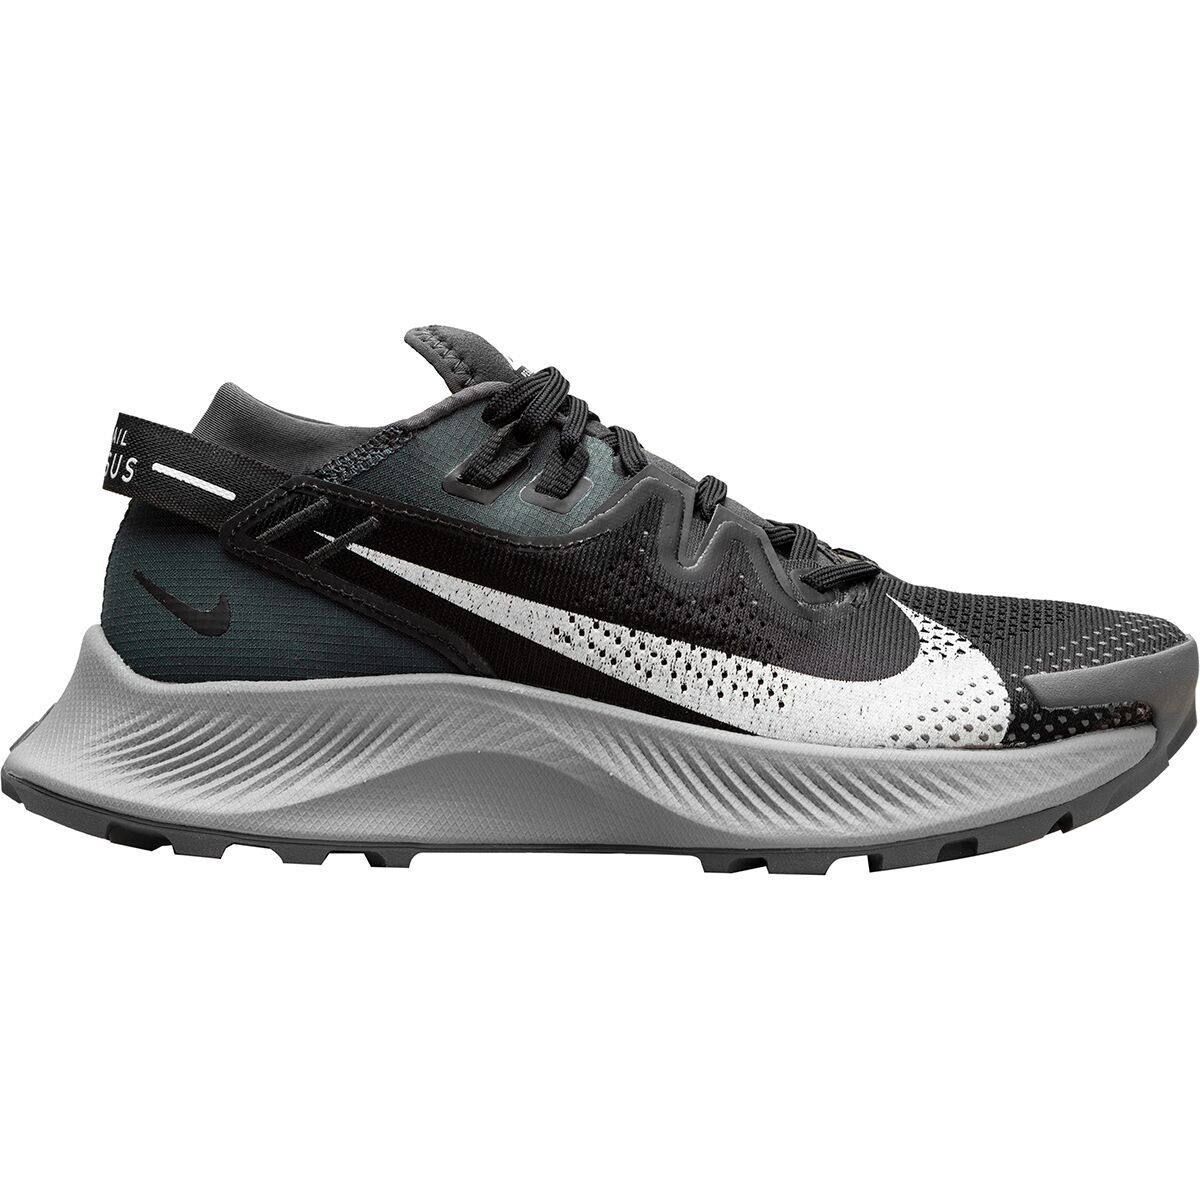 NikePegasus Trail 2 Running Shoe - Women's